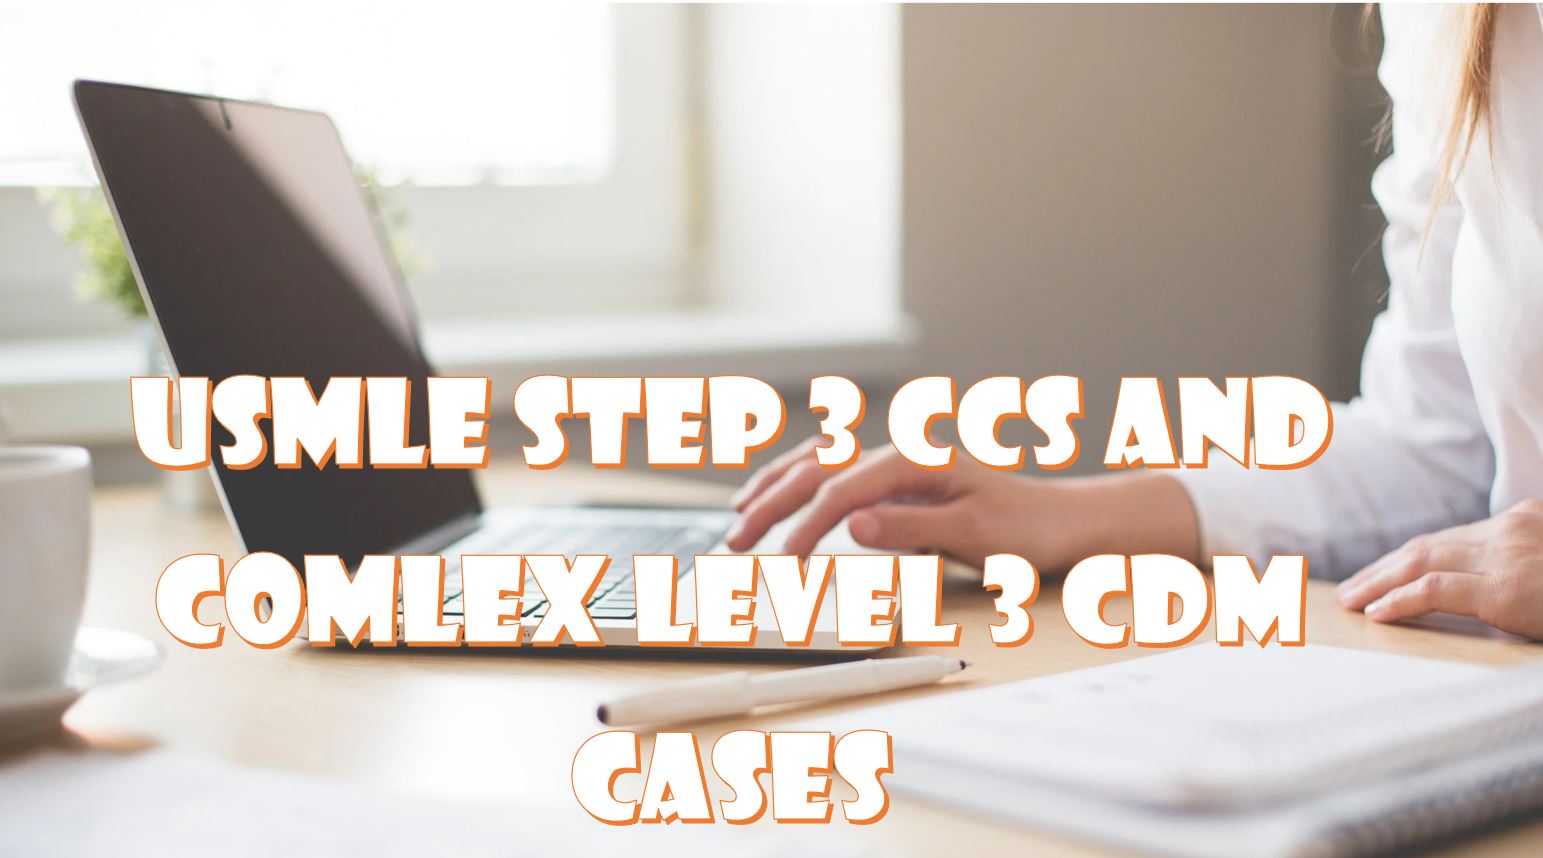 usmle-step-3-ccs-and-comlex-level-3-cdm-cases-preparing-to-become